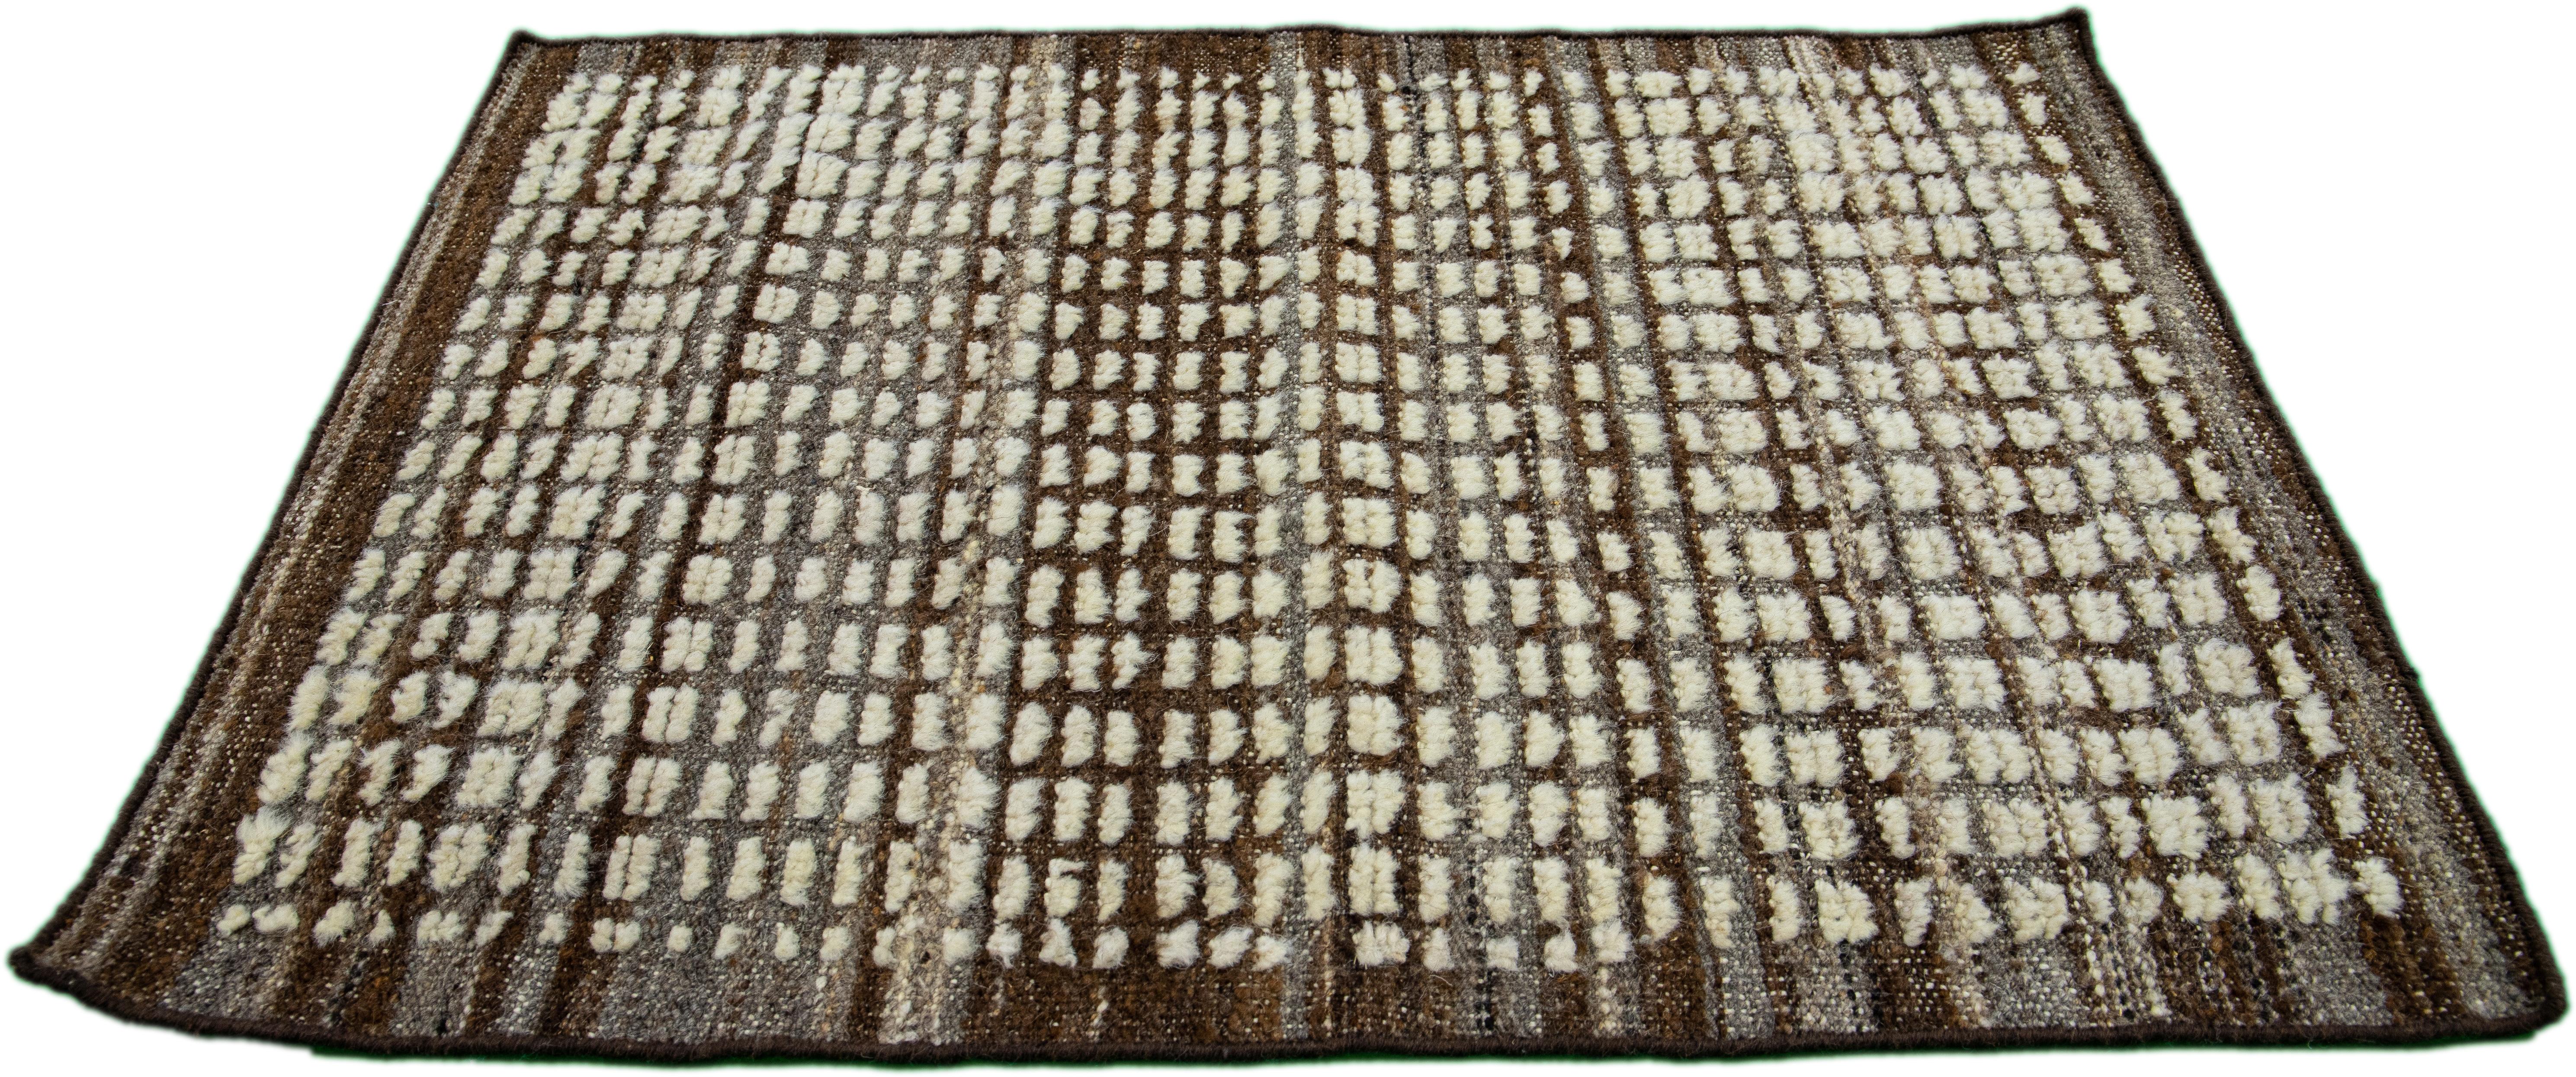 Moderner Wollteppich im marokkanischen Stil von Apadana. Kundenspezifische Größen und Farben auf Bestellung. 

Material: 100% Wolle 
Techniken: Handgeknüpft
Stil: Marokkanisch 
Vorlaufzeit: Ca. 15-16 Wochen verfügbar 
Farben: Wie abgebildet, andere